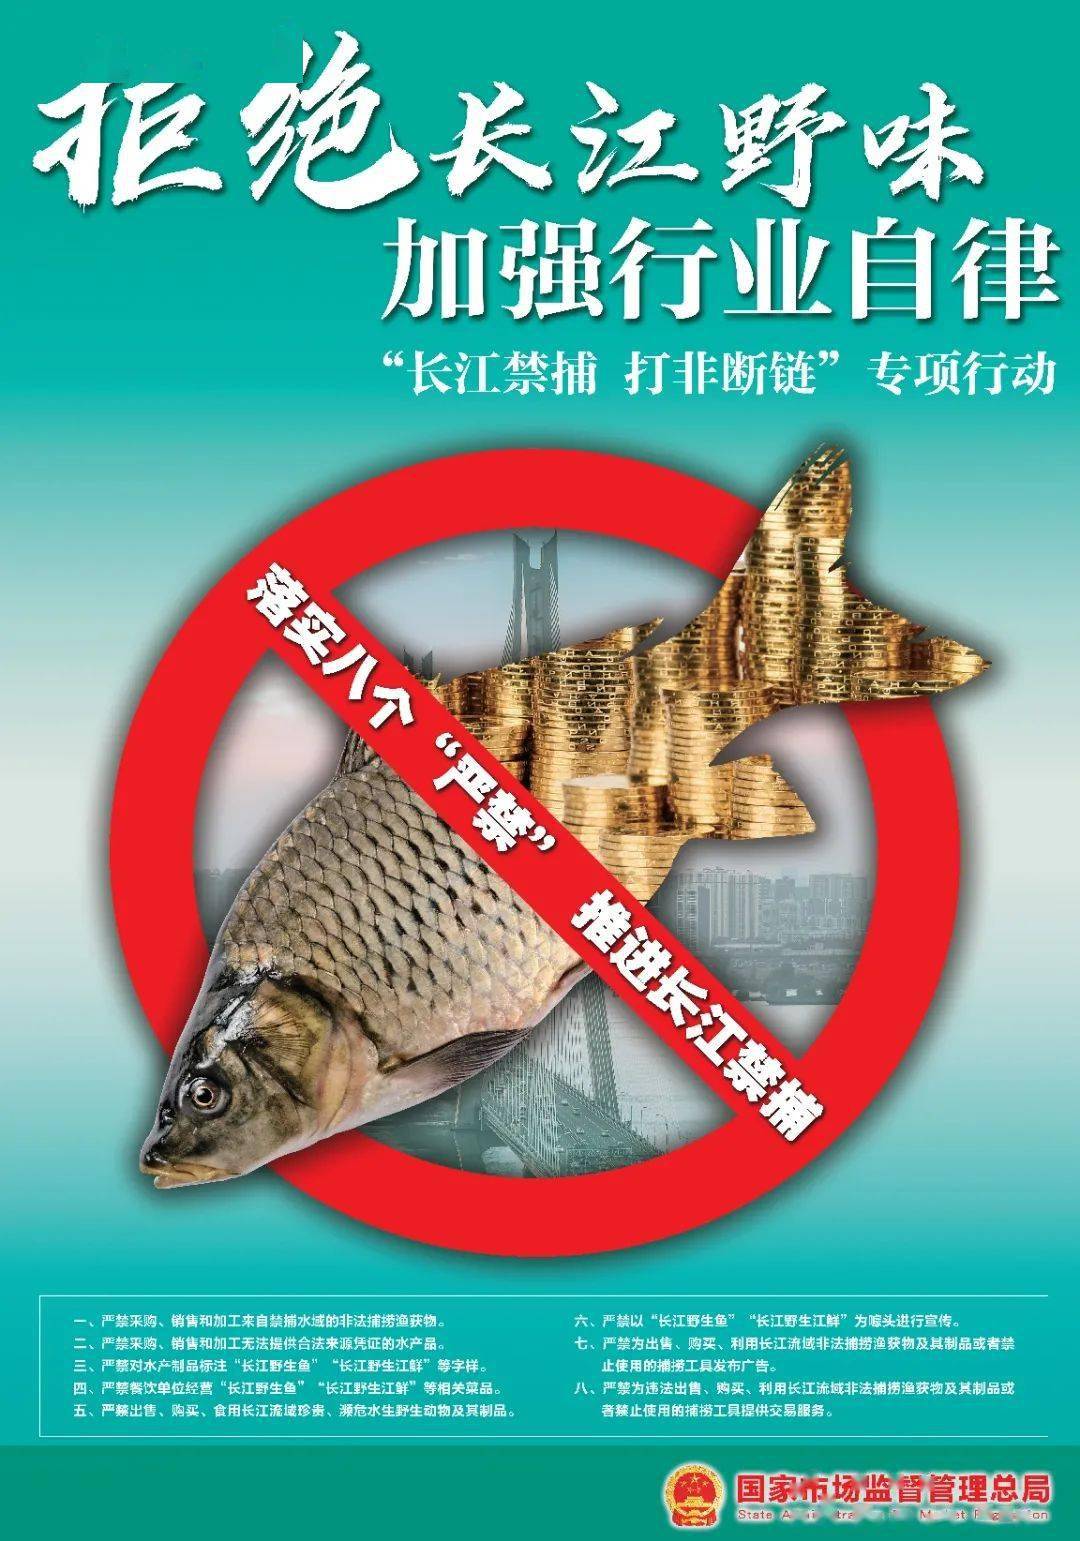 十年禁渔措施__十年禁渔政策实施